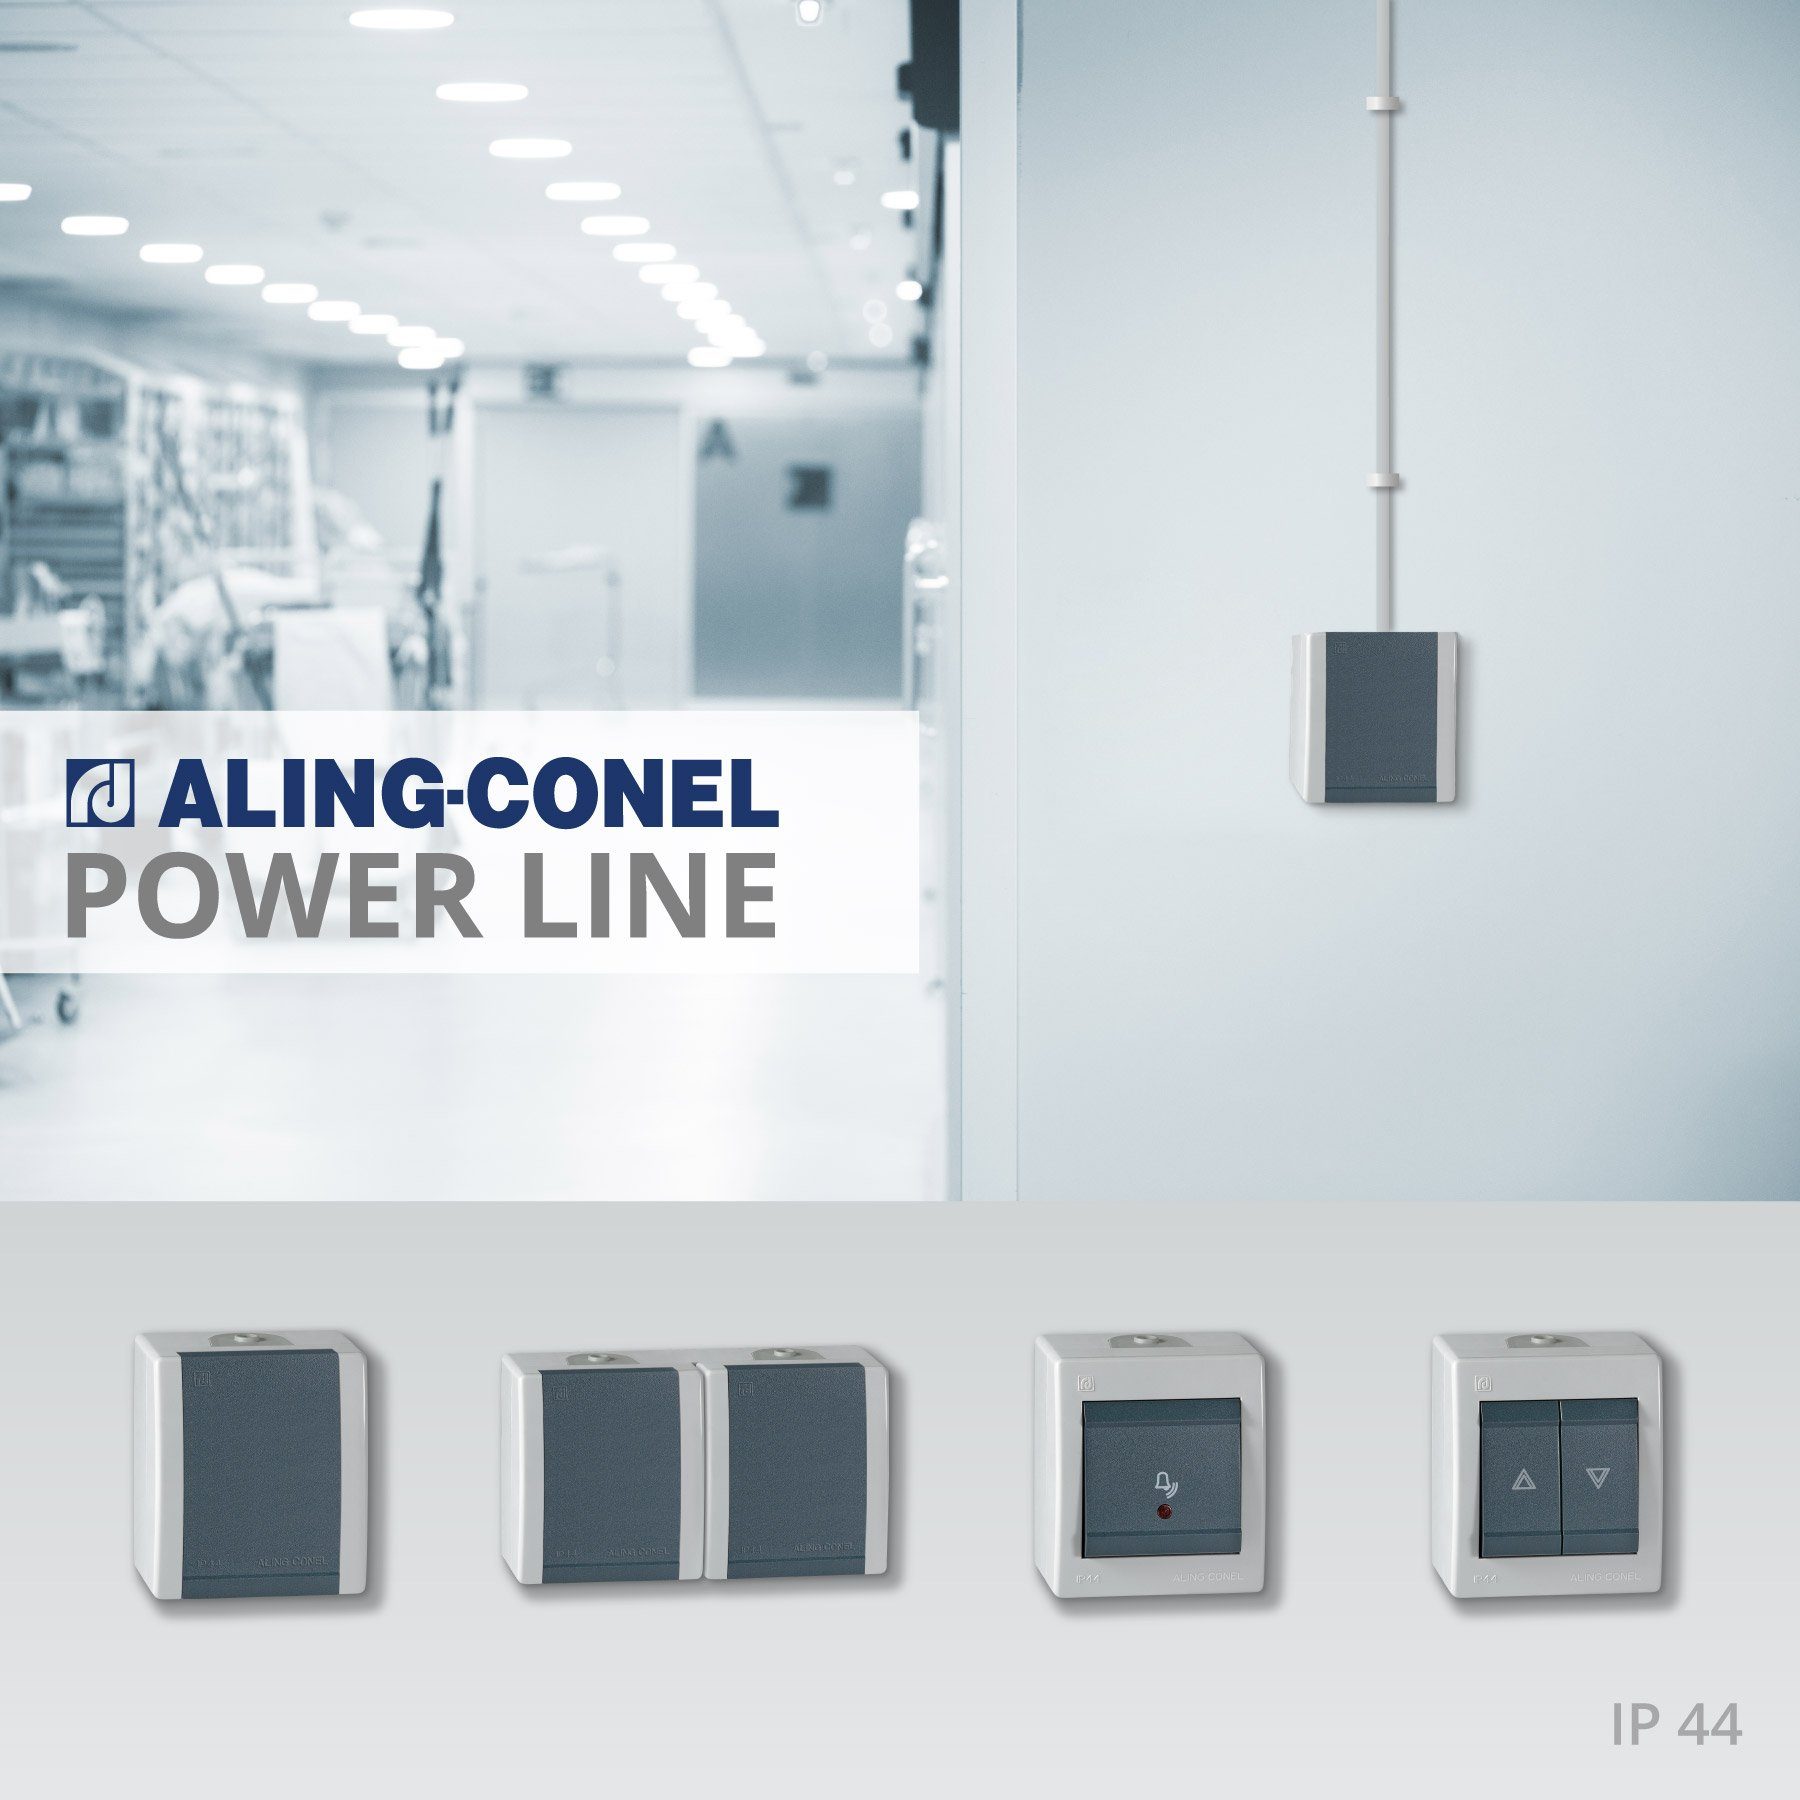 Line Power IP 44 Schalter Aufputz-Taster, Conel Aling weiß